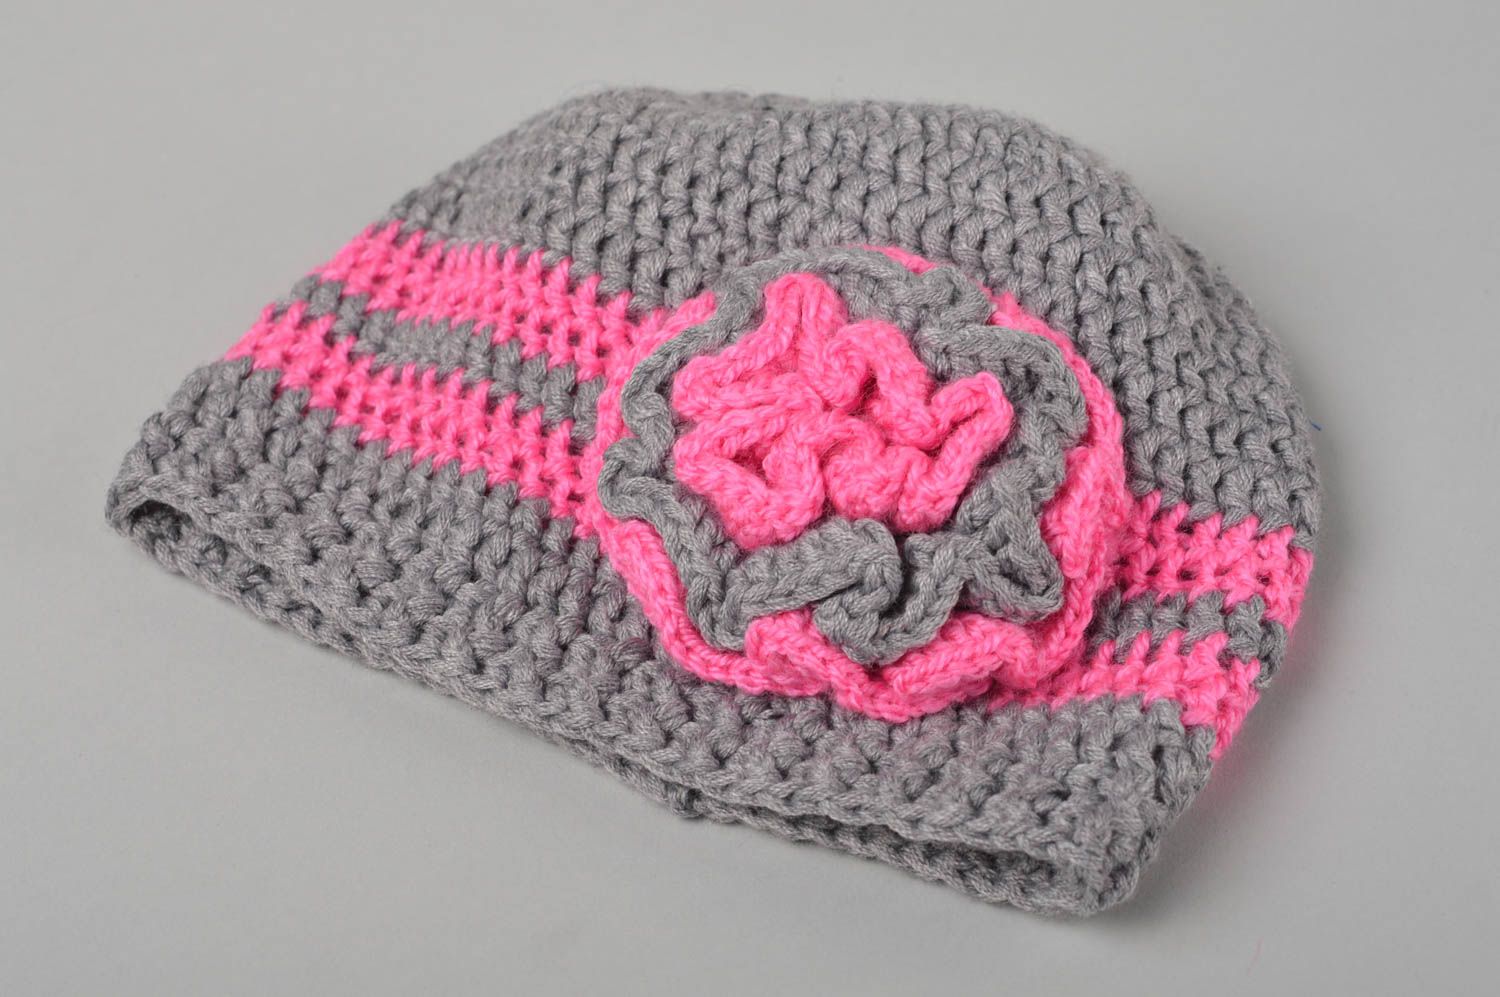 Handmade crocheted baby hat openwork hat for children warm baby hat gift  photo 2